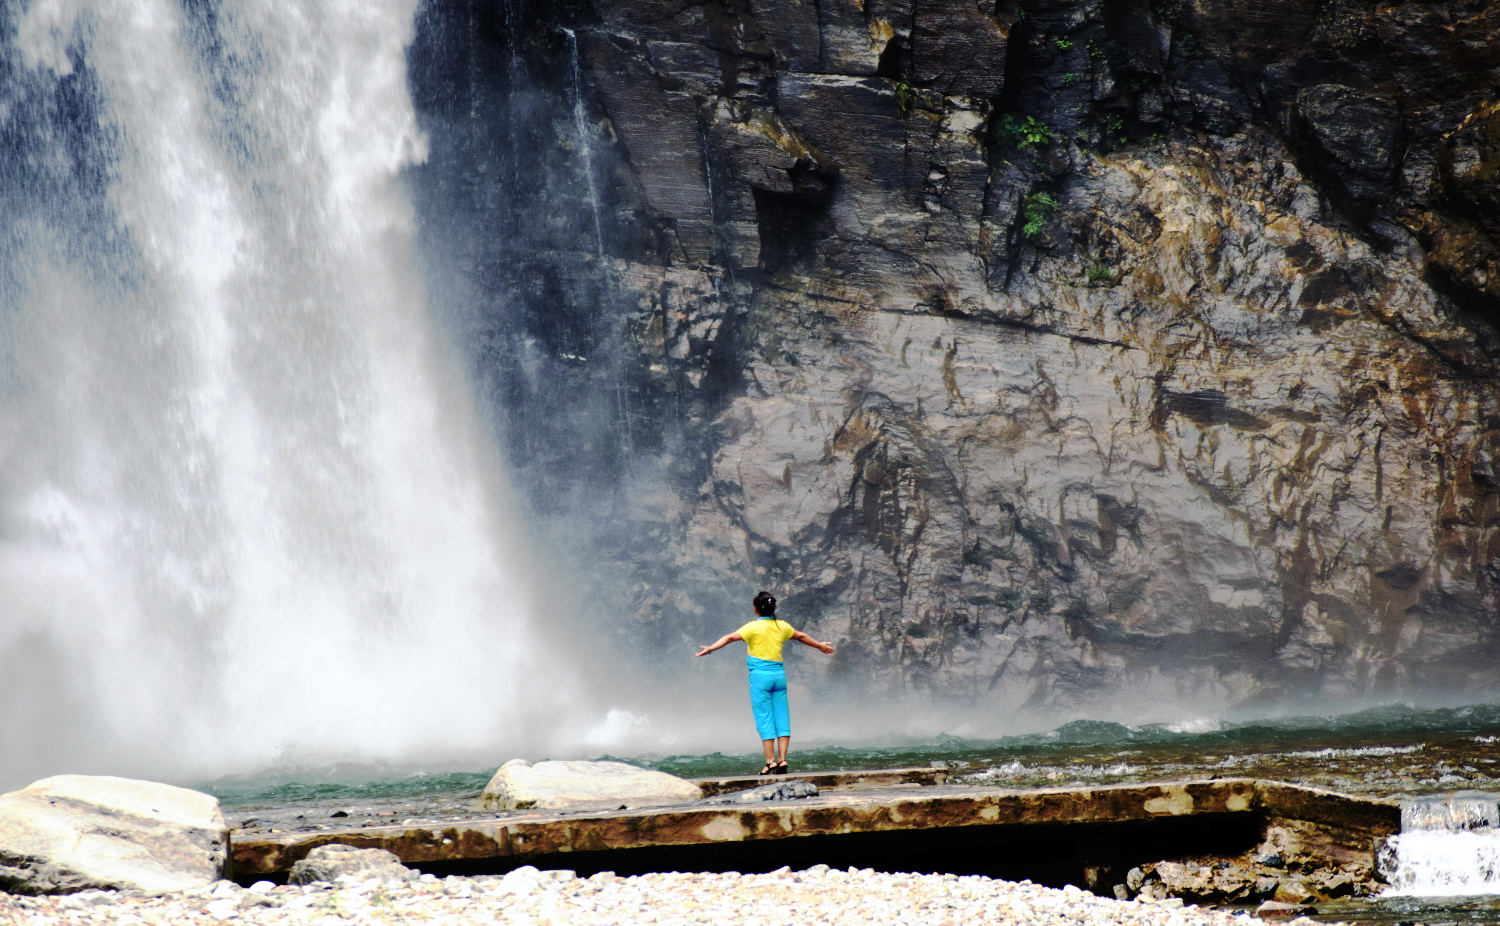 Ullim Waterfalls, North Korea (DPRK)